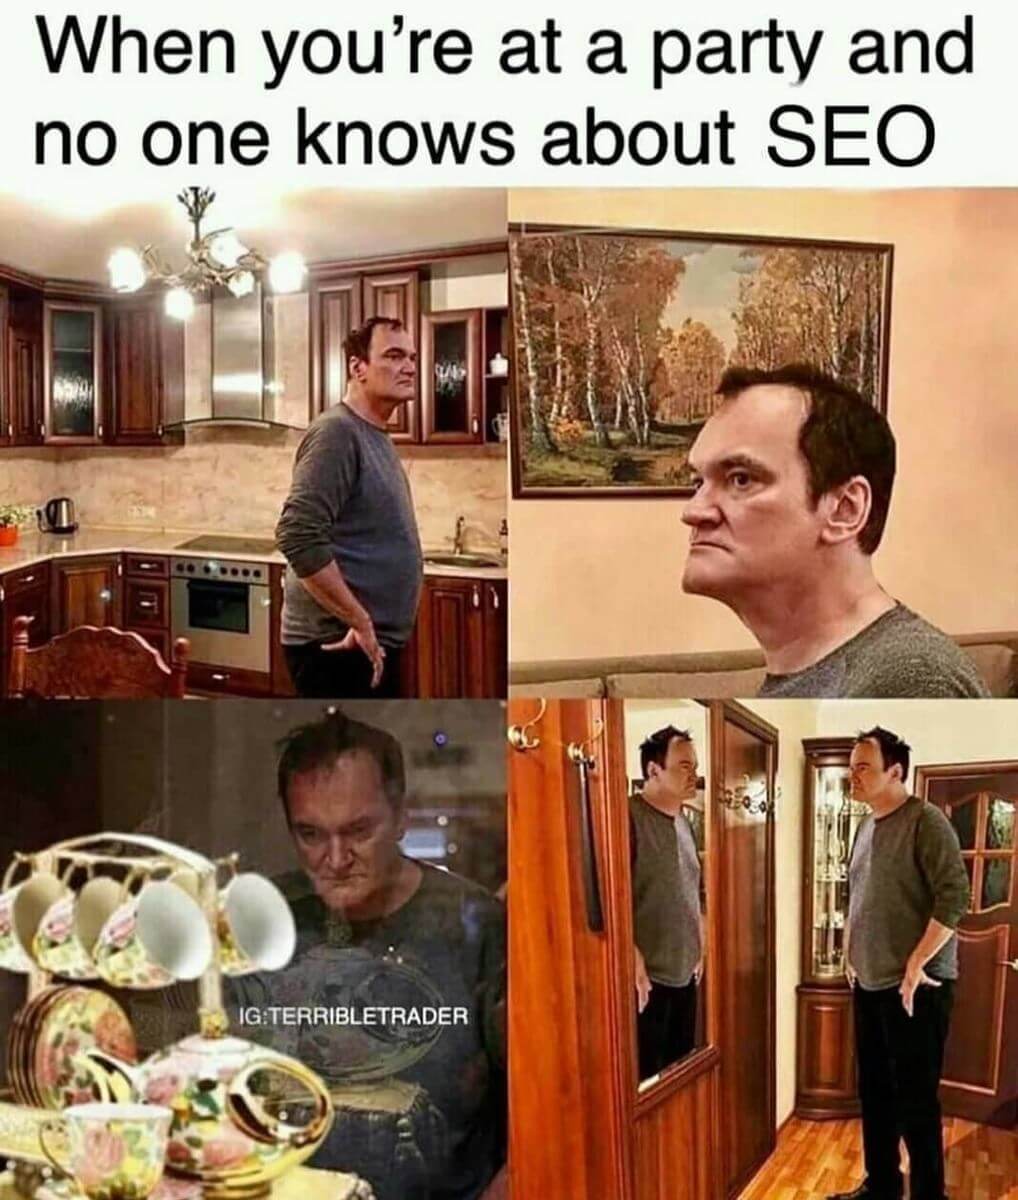 Meme about SEO